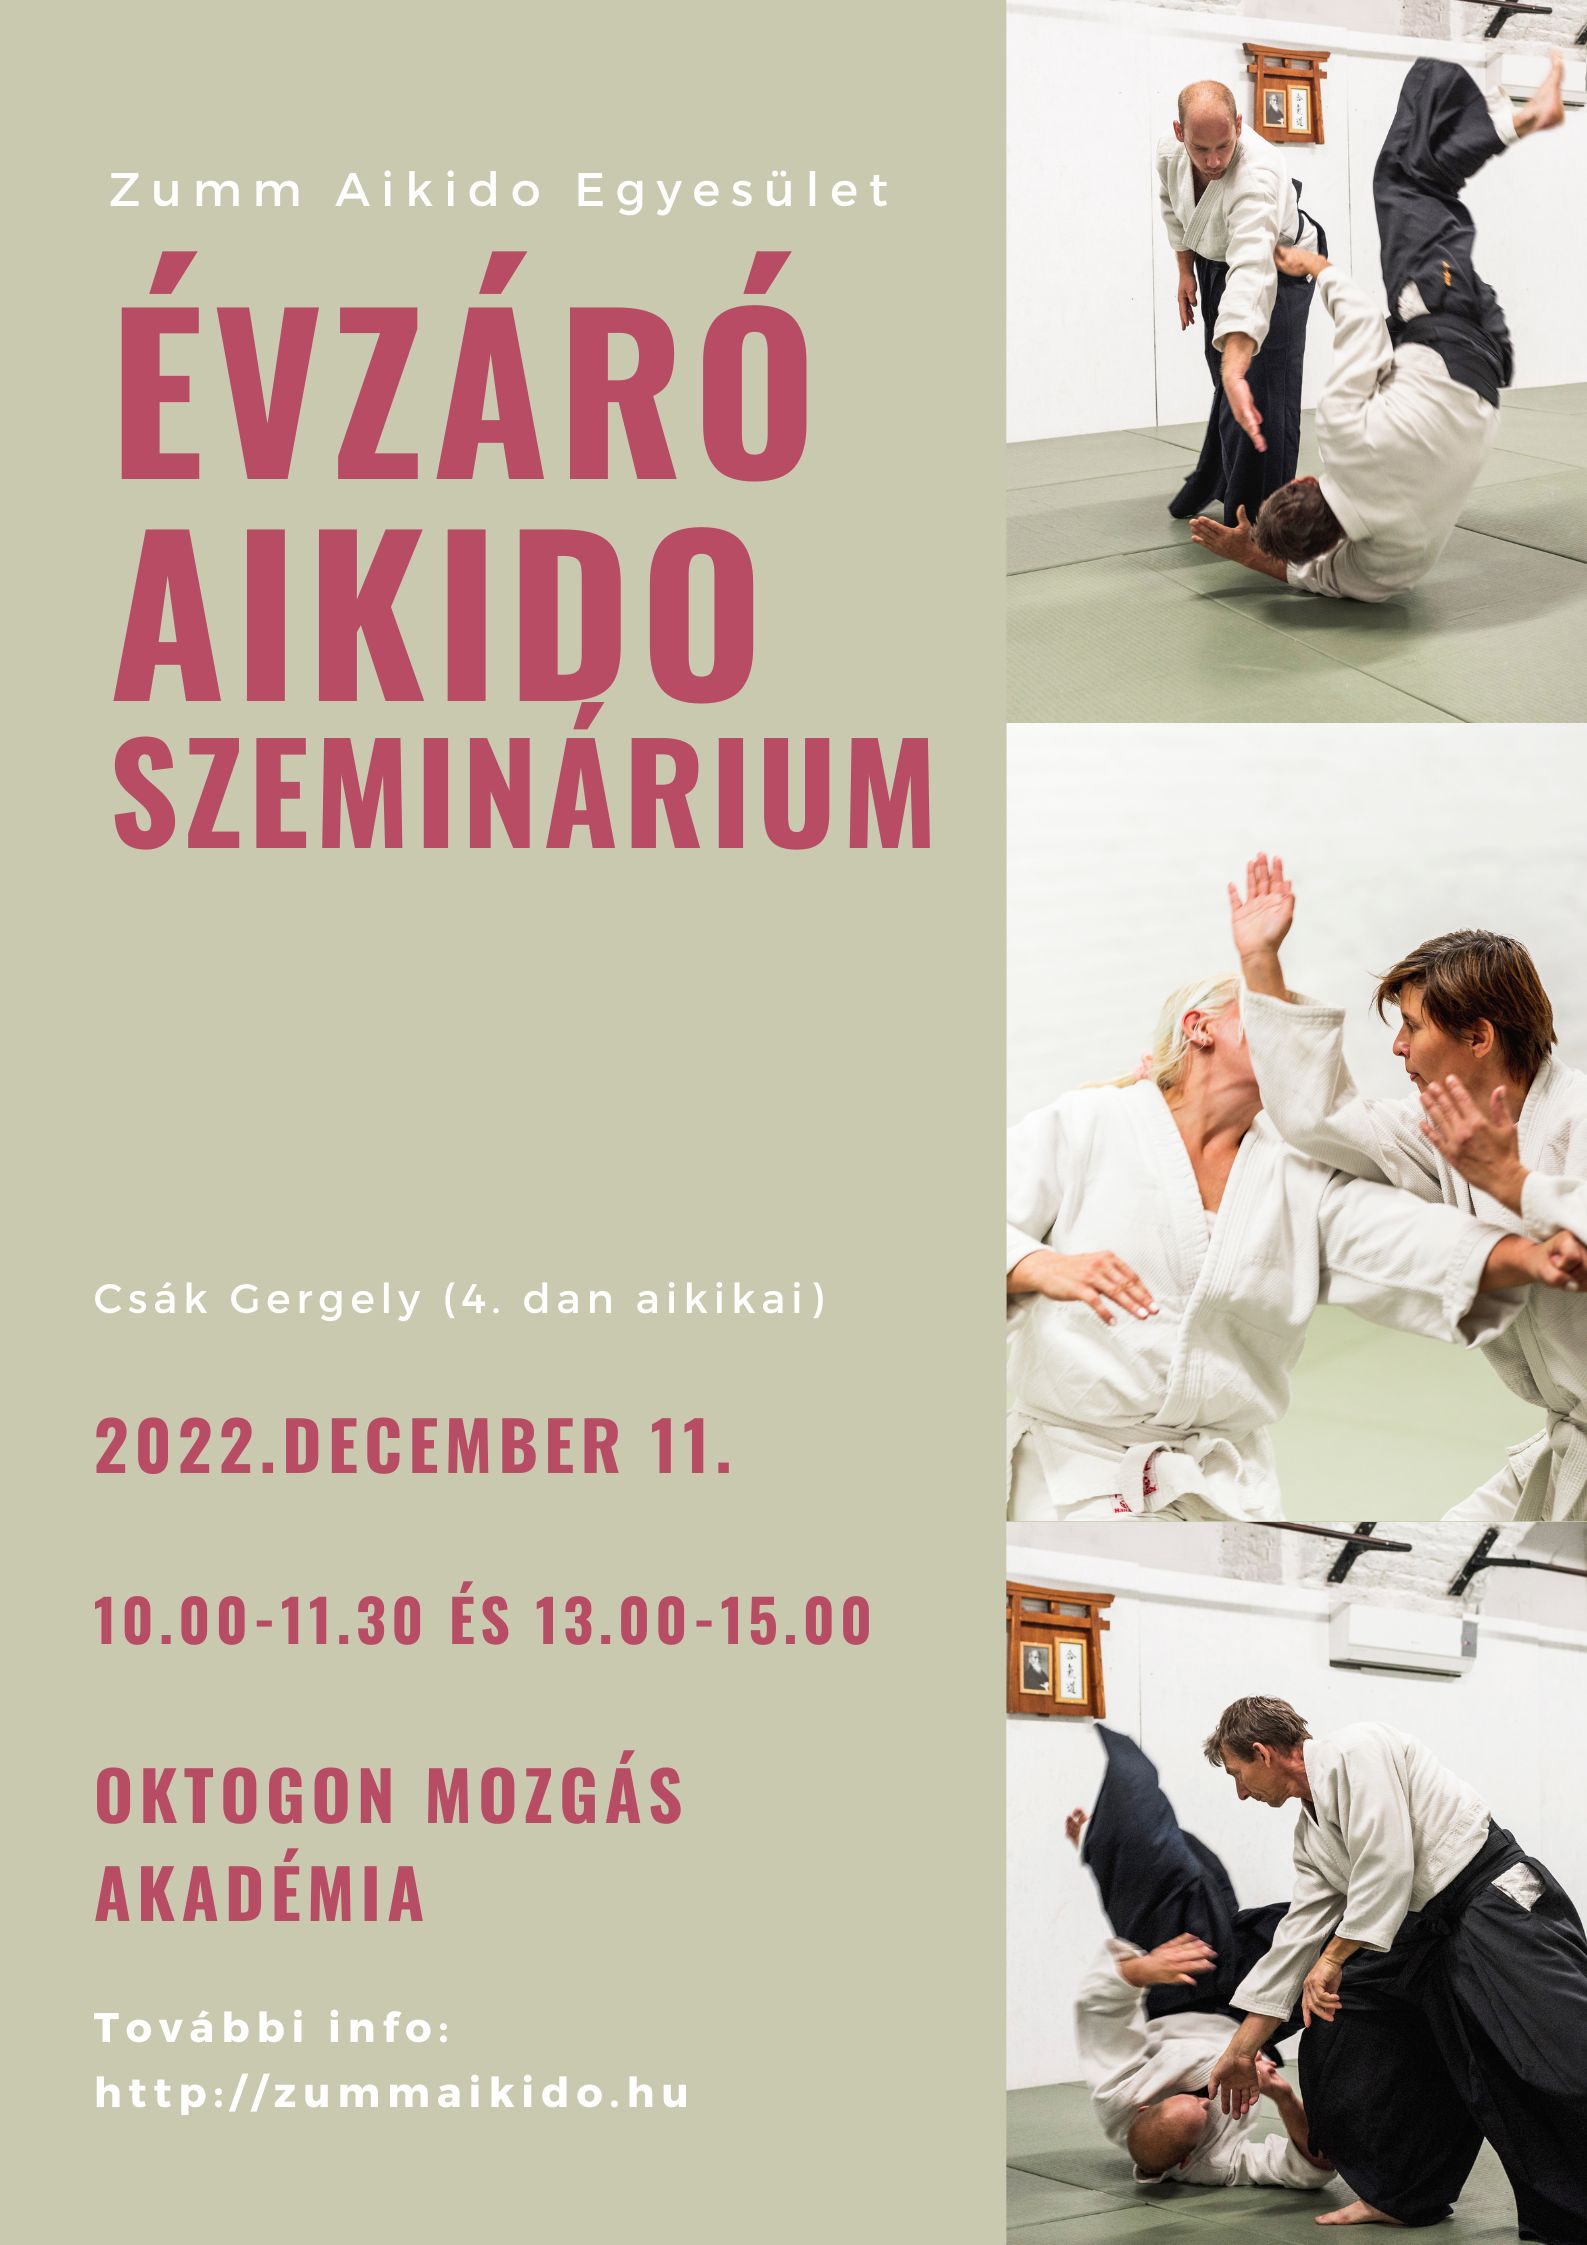 Évzáró aikido edzőtábor